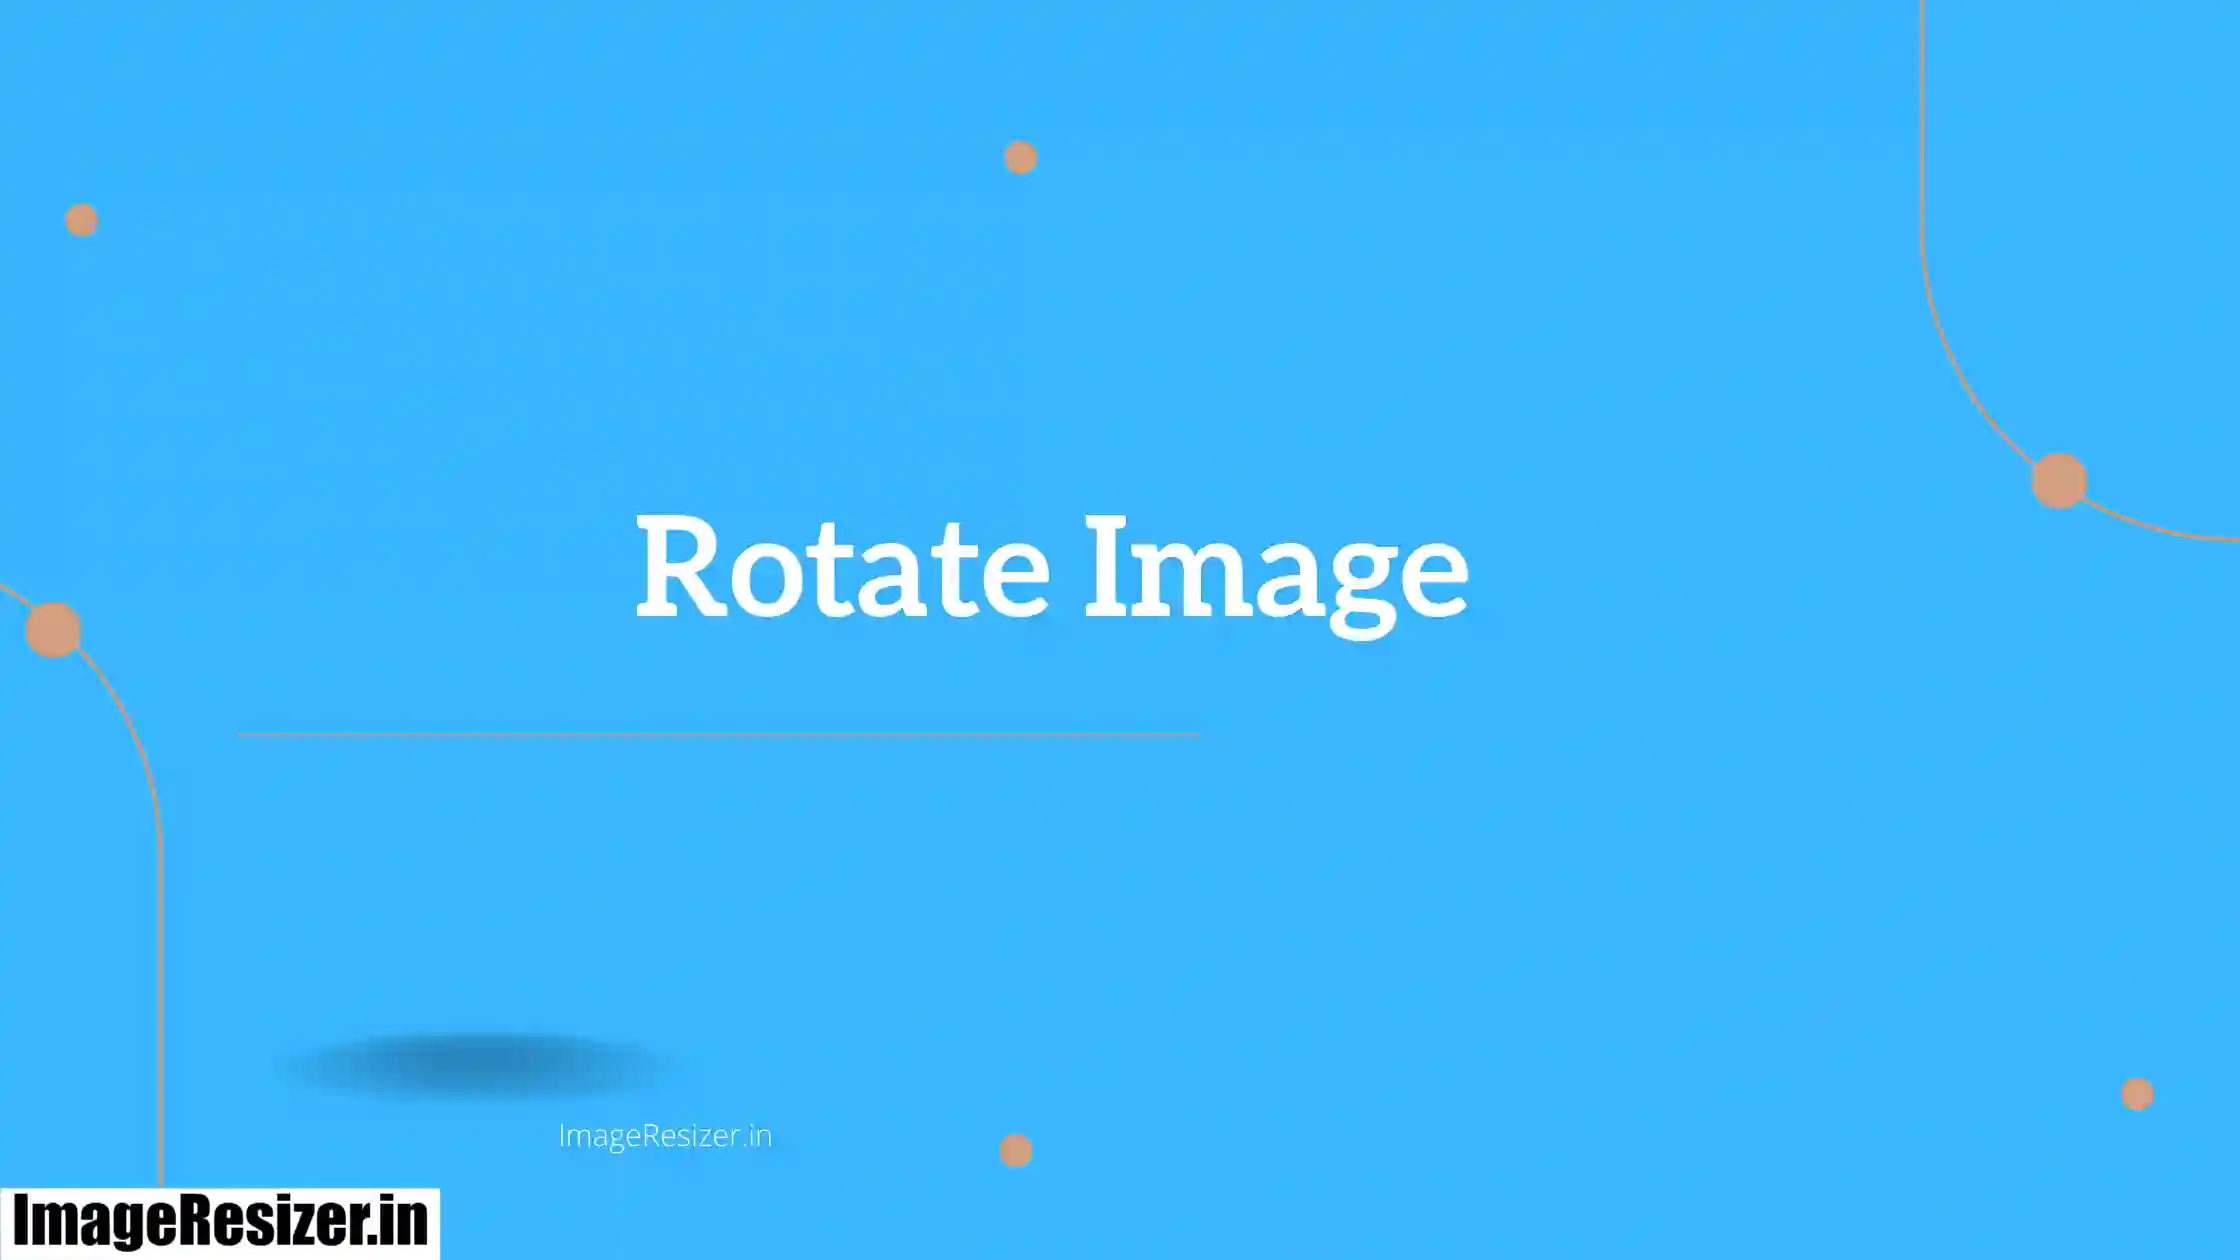 Rotate image tool